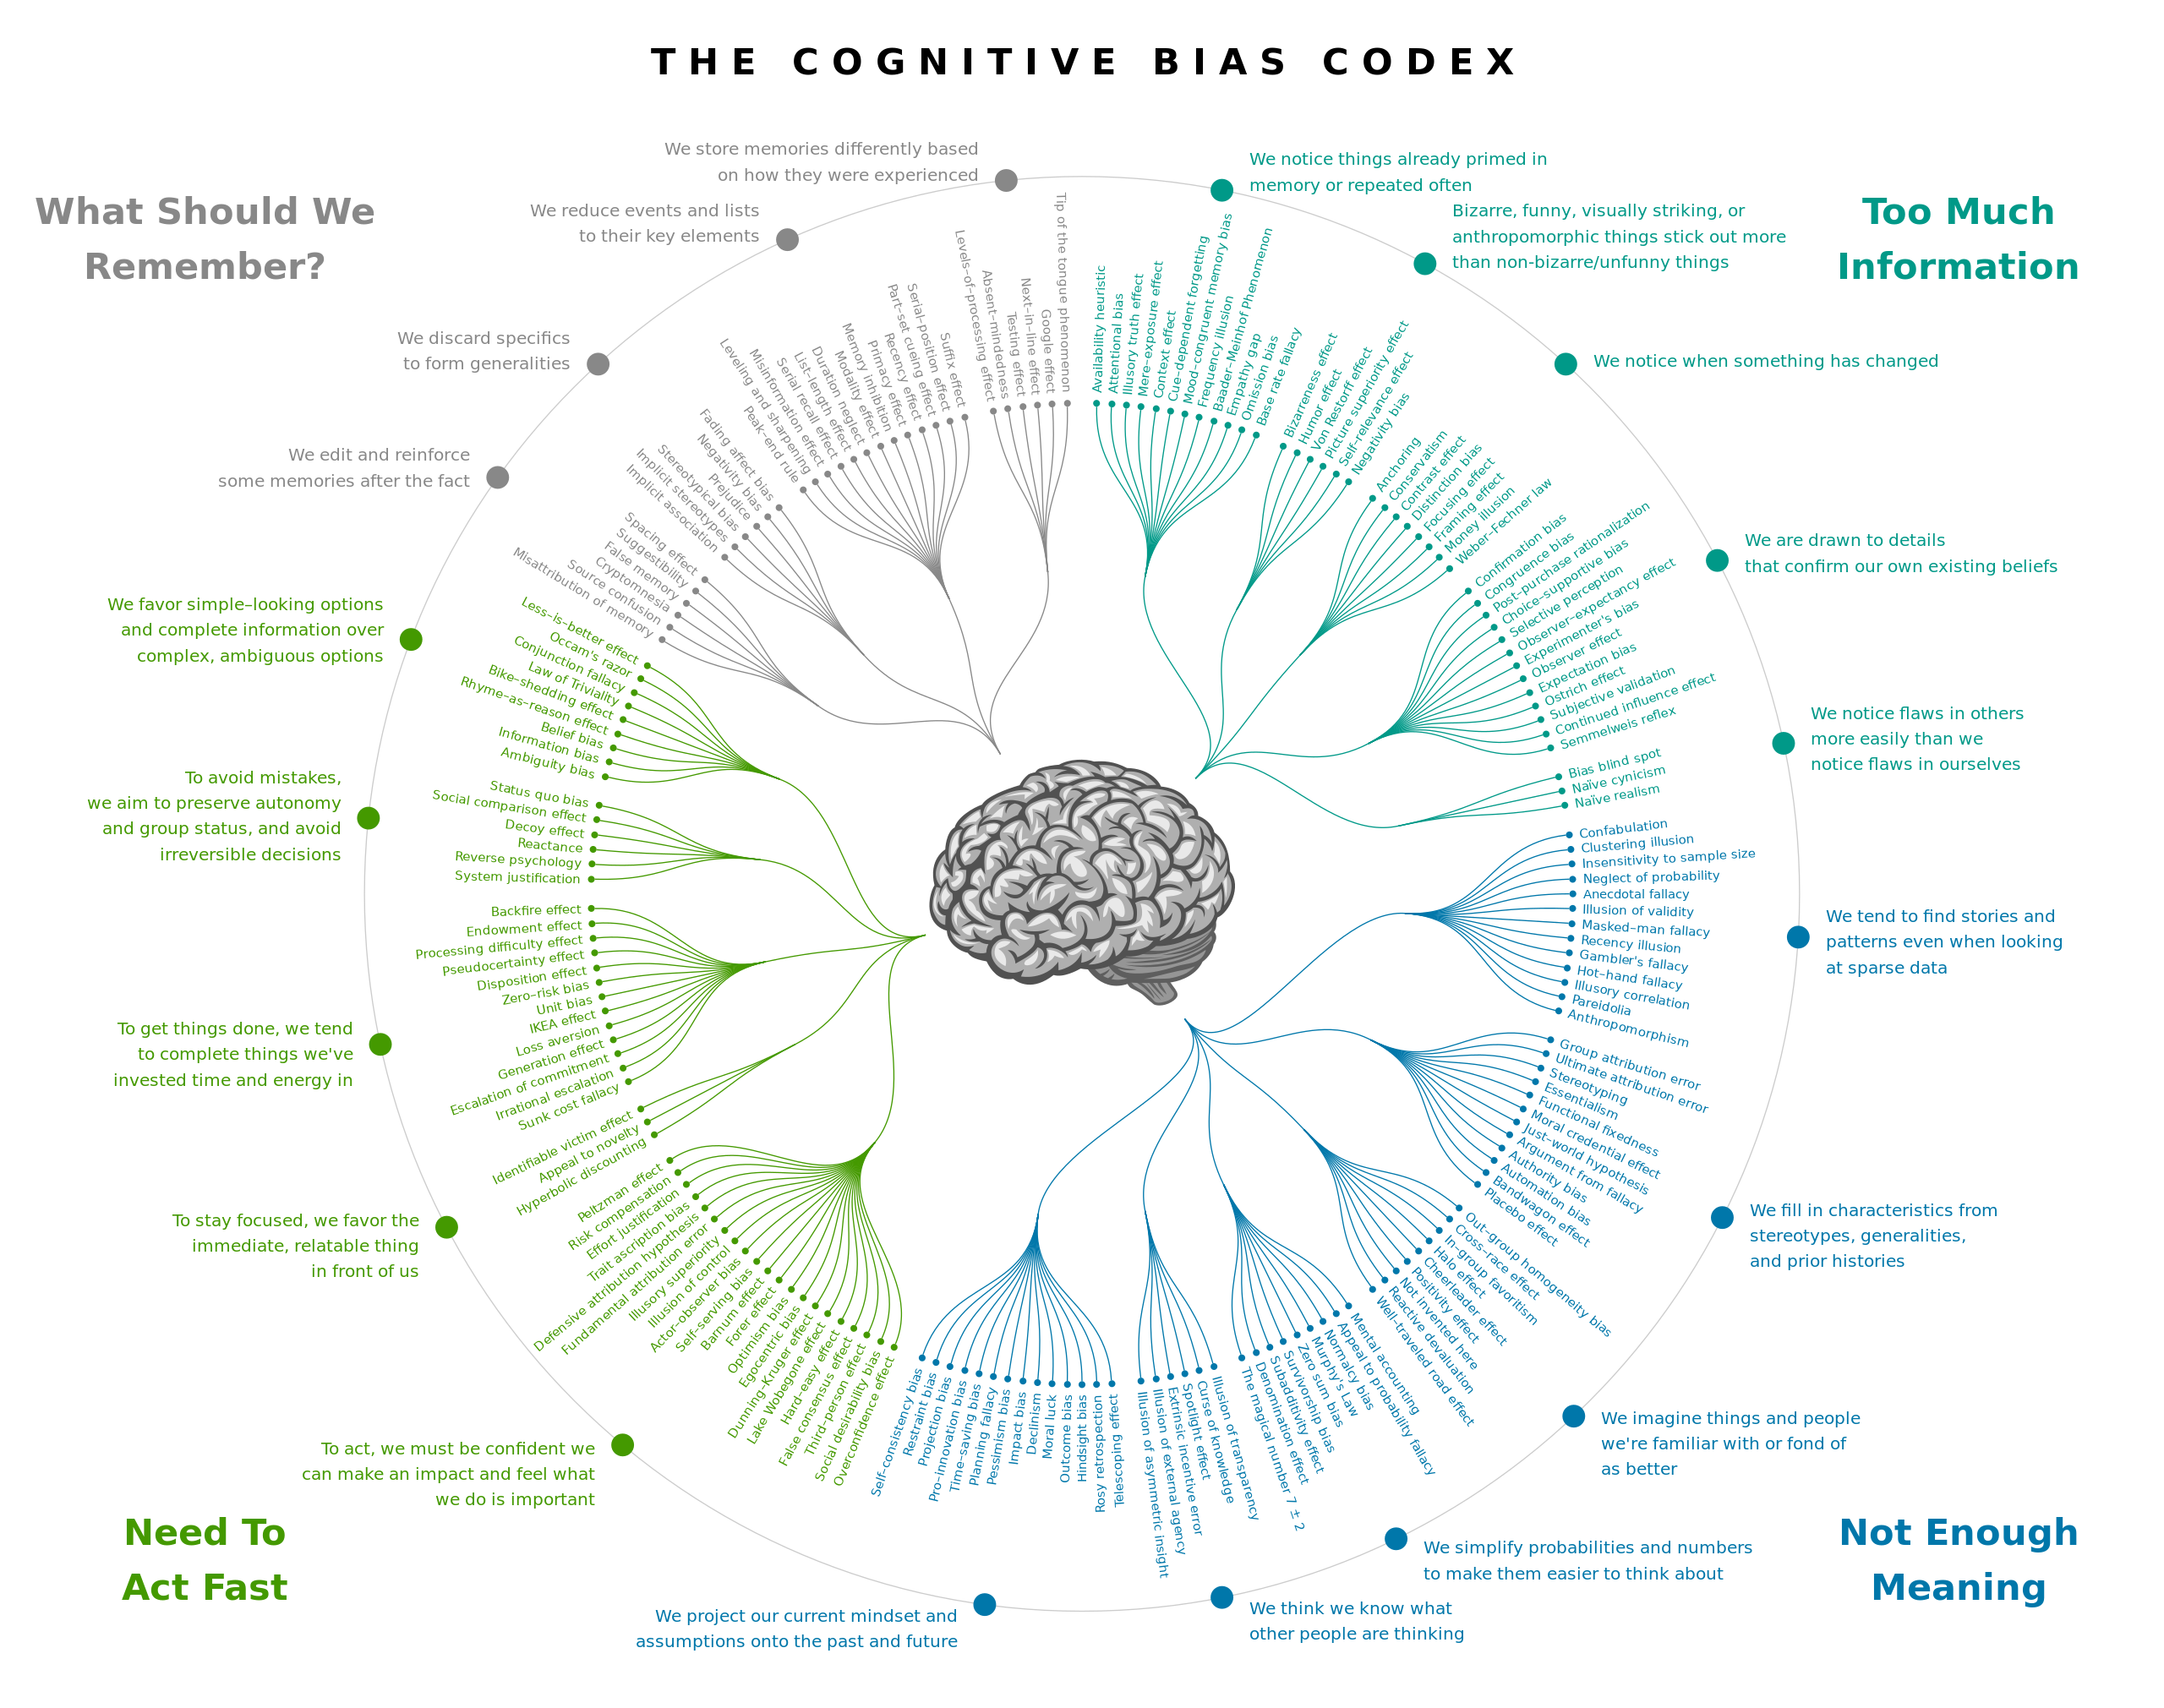 Um cérebro apontando para as 4 áreas de viés cognitivos: O que eu deveria lembrar? Muita informação. Sem muito significado. Preciso agir rápido. Para cada uma delas dezenas de vieses cognitivos formando uma espécie de flor com um cérebro no meio.